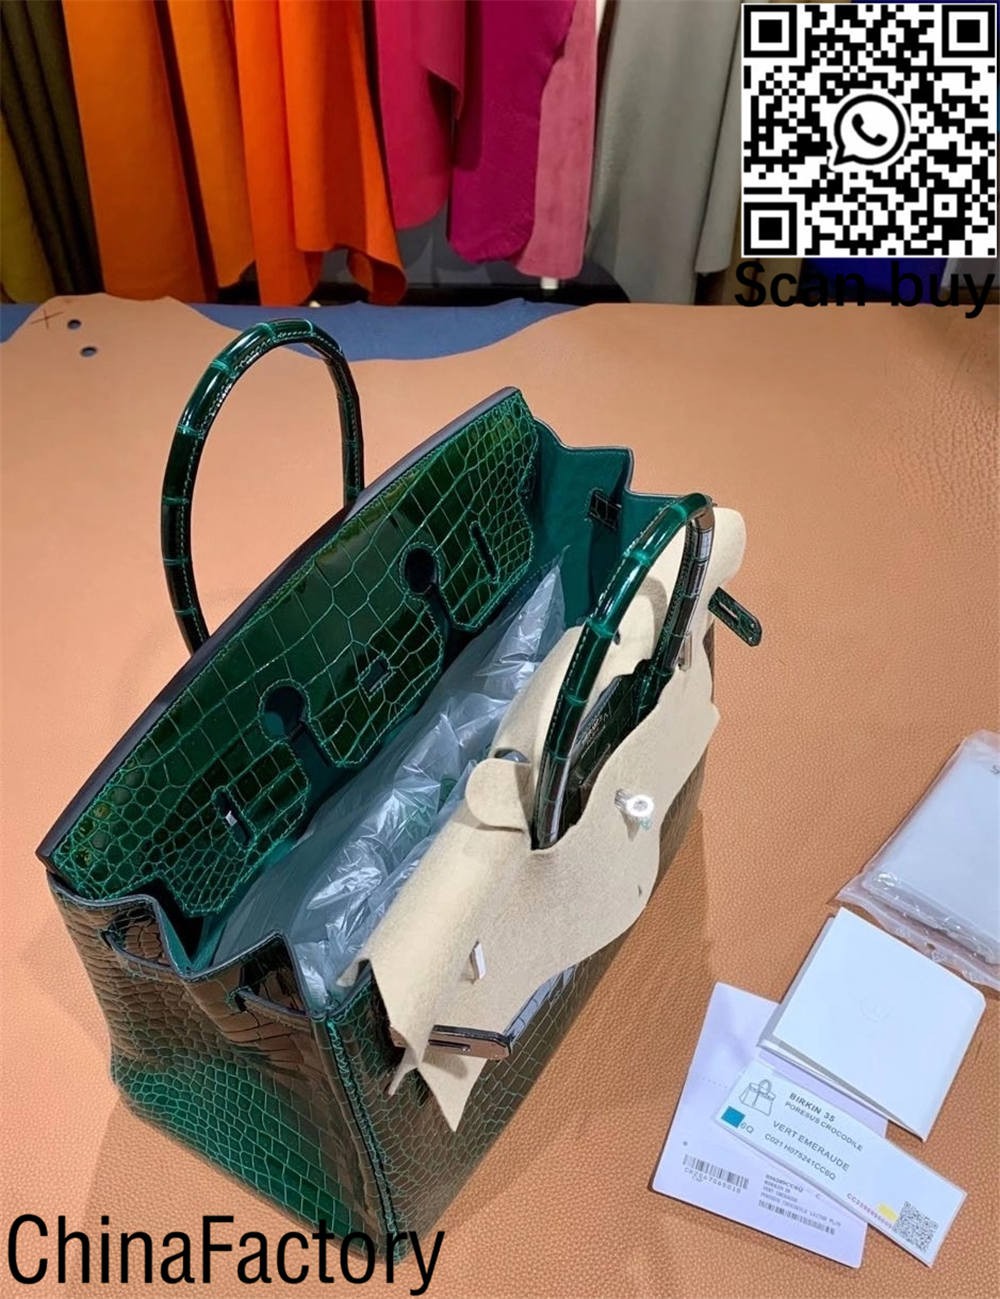 Najwyższej jakości torebka hermes krokodyl birkin replika Australia (aktualizacja 2022) - najlepsza jakość fałszywe torebki Louis Vuitton sklep internetowy, torebka projektanta replik.